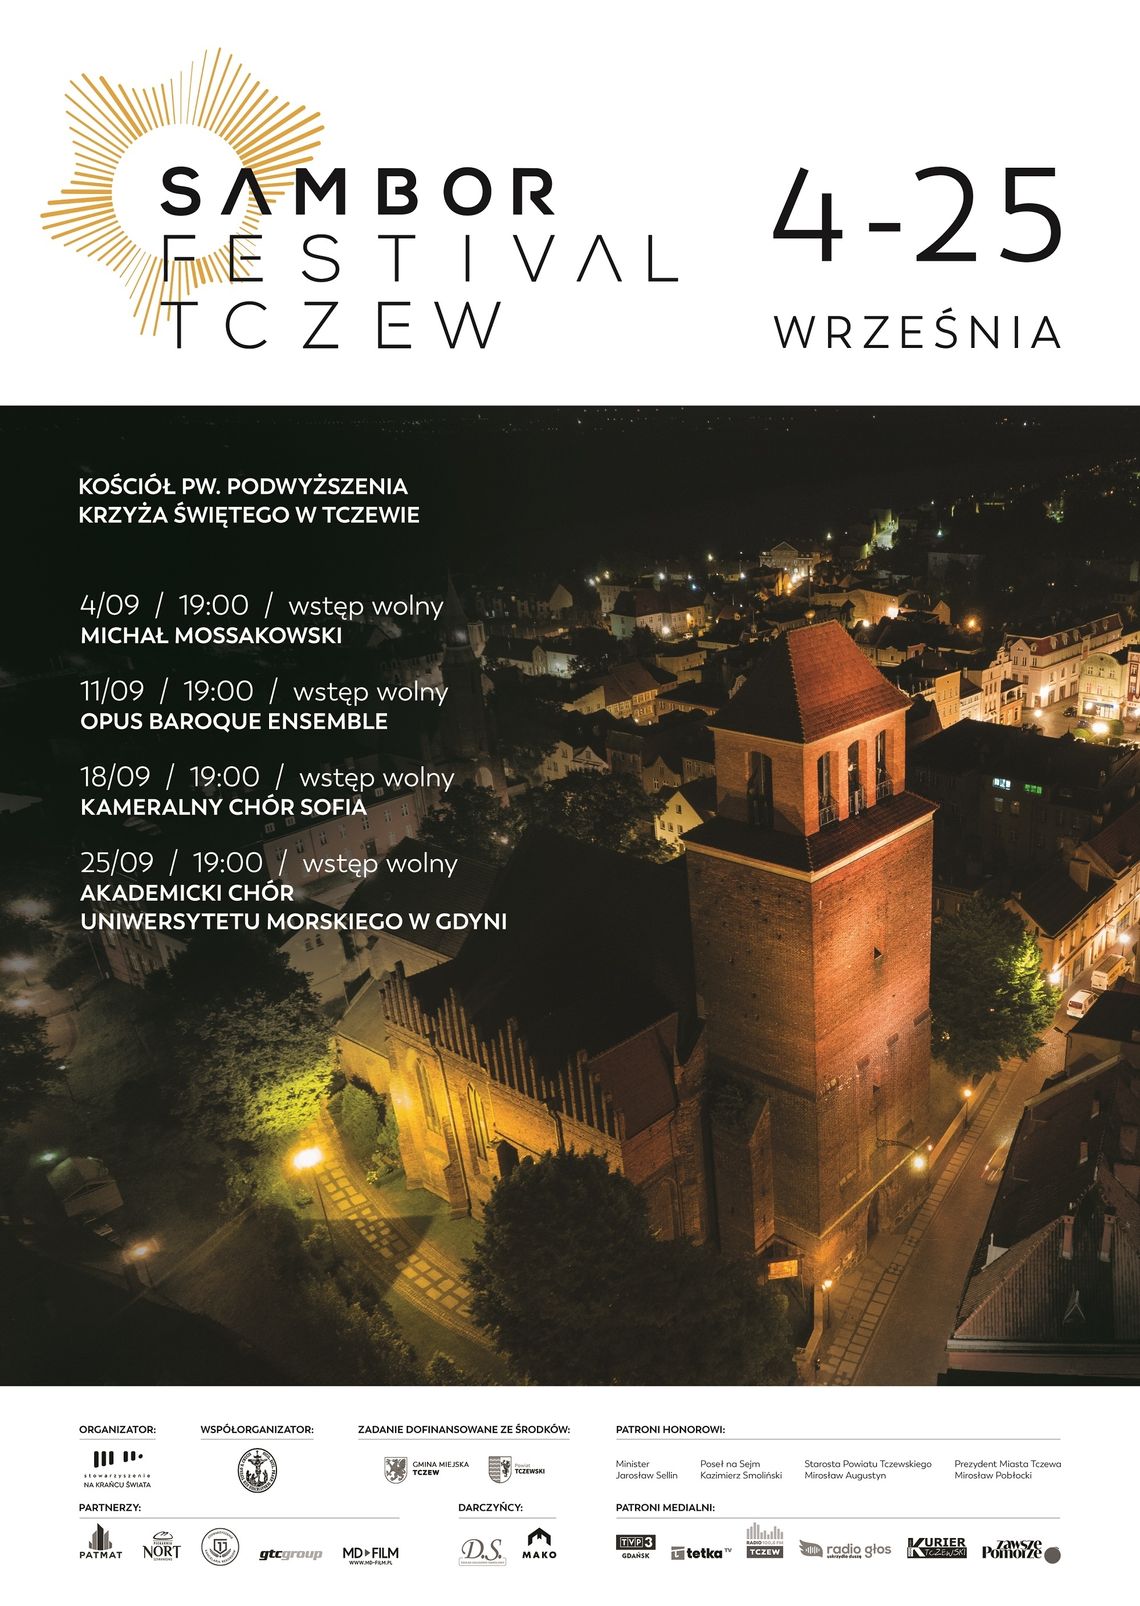 Finał Sambor Festival Tczew 2022: IV koncert - AKADEMICKI CHÓR UNIWERSYTETU MORSKIEGO W GDYNI